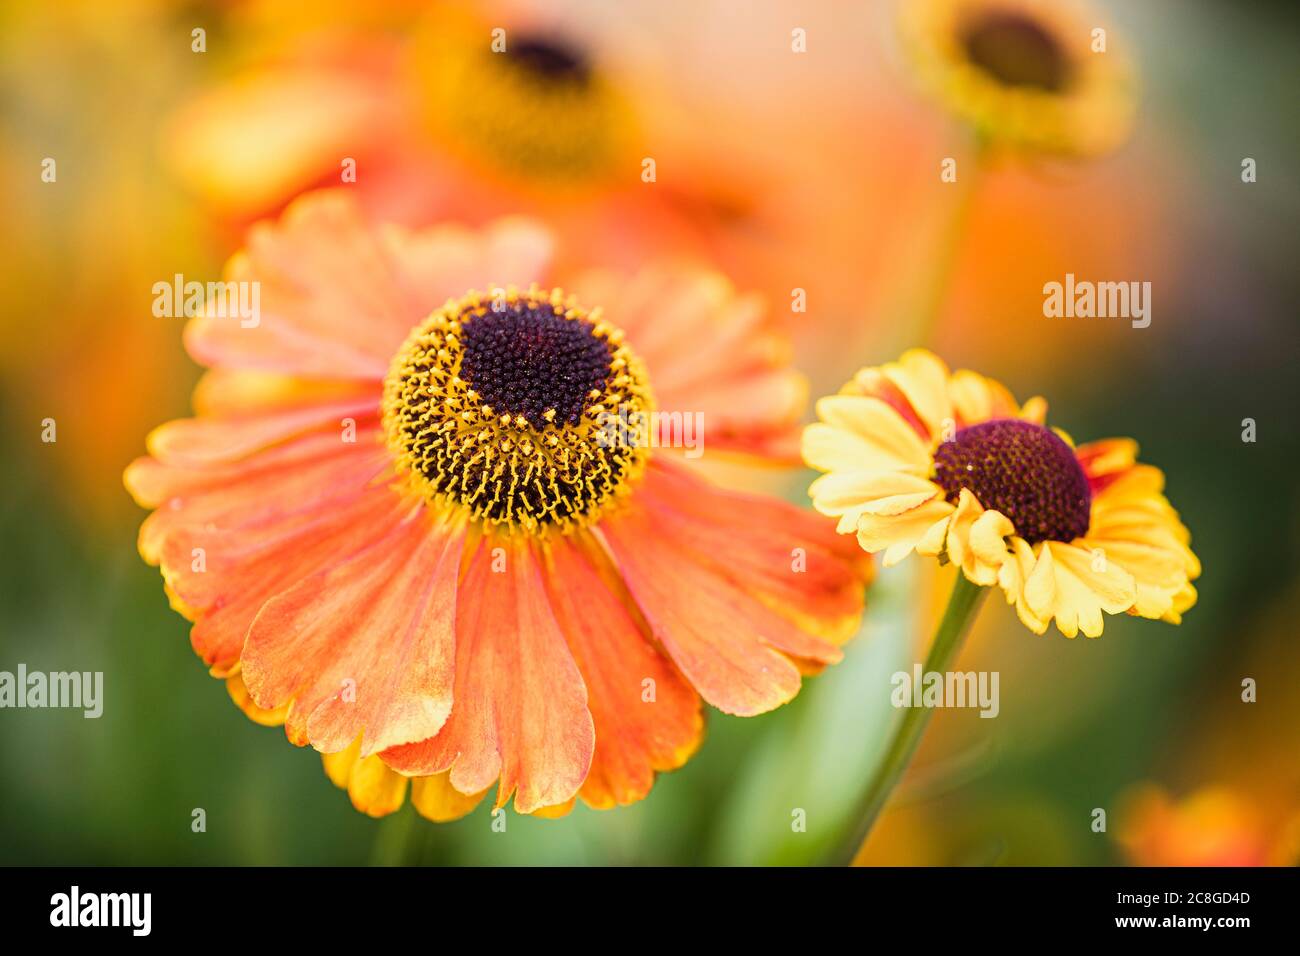 Schneezeweed, Gemeine Niesewed, Helenium 'Moerheim Beauty', Orange farbige Blume wächst im Freien mit Blütenblättern und Staubgefäßen sichtbar. Stockfoto